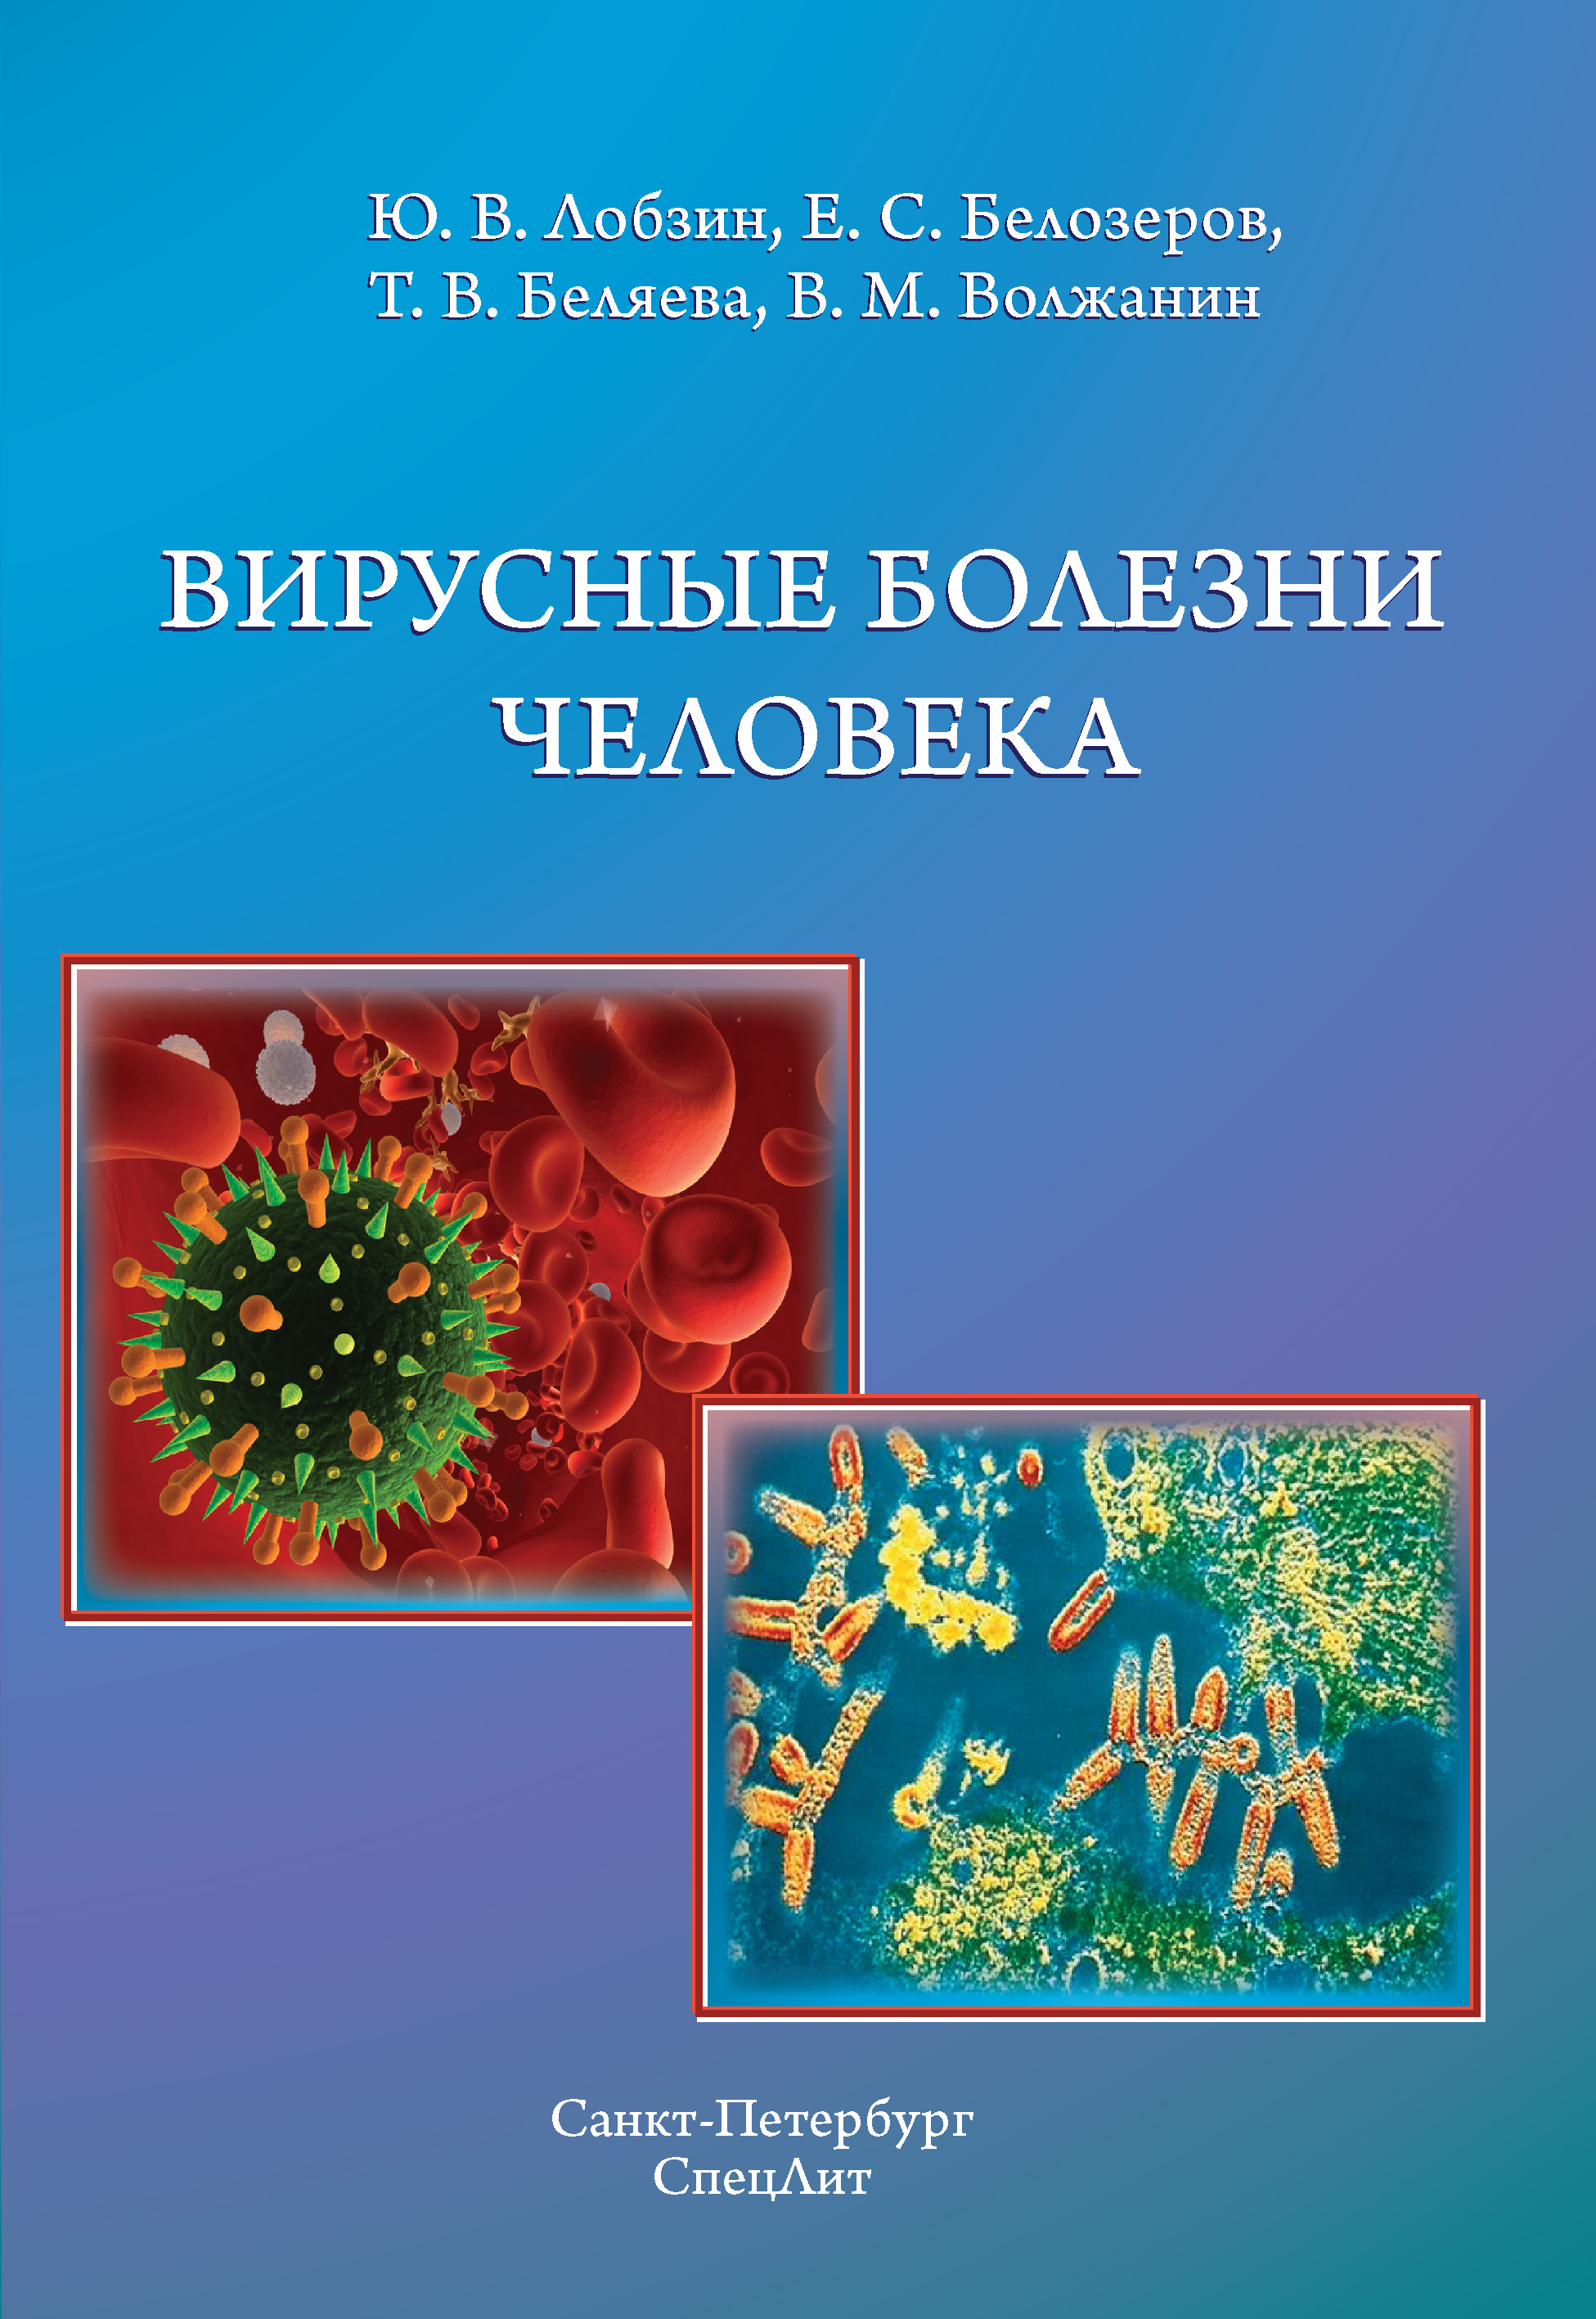 Книги про вирусы